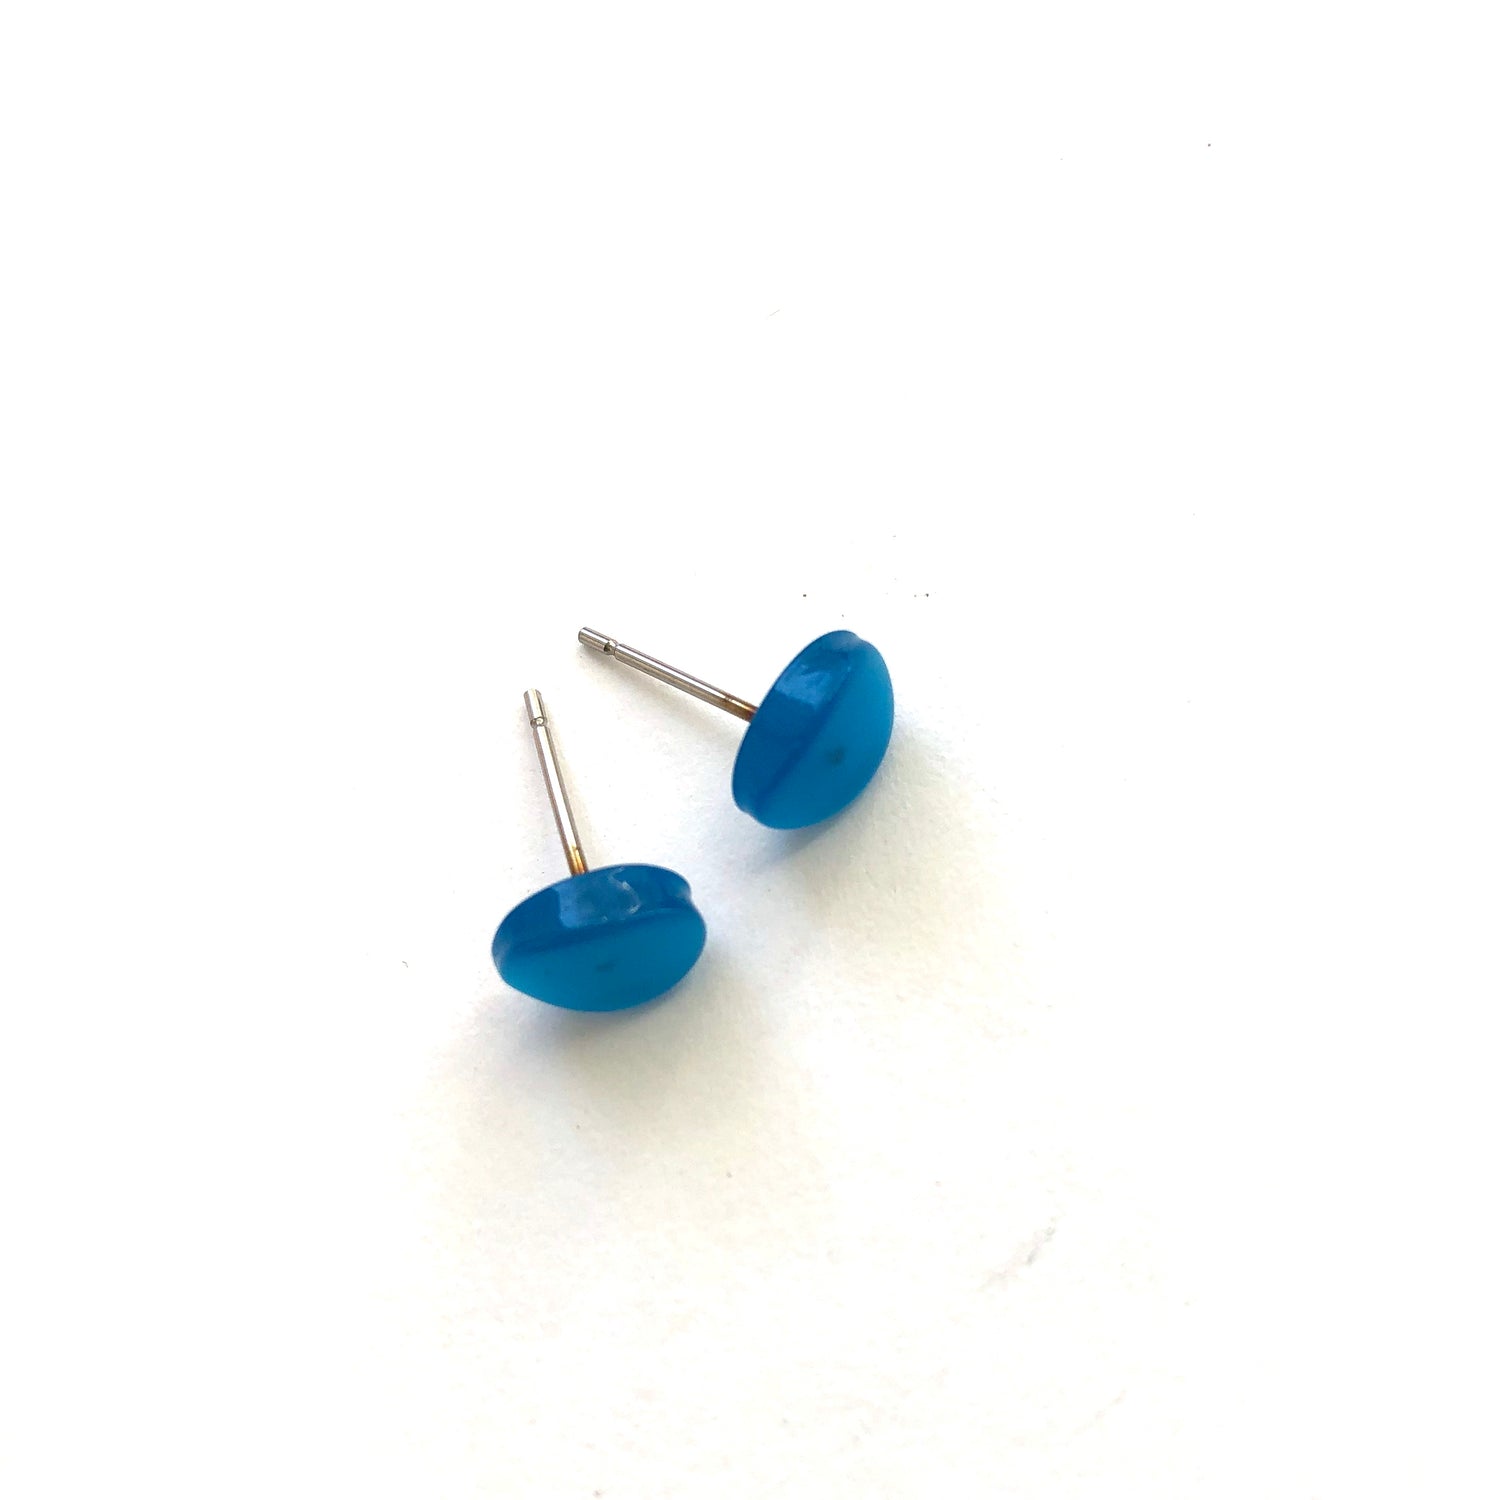 Aqua Blue Moonglow Tiny Oval Stud Earrings